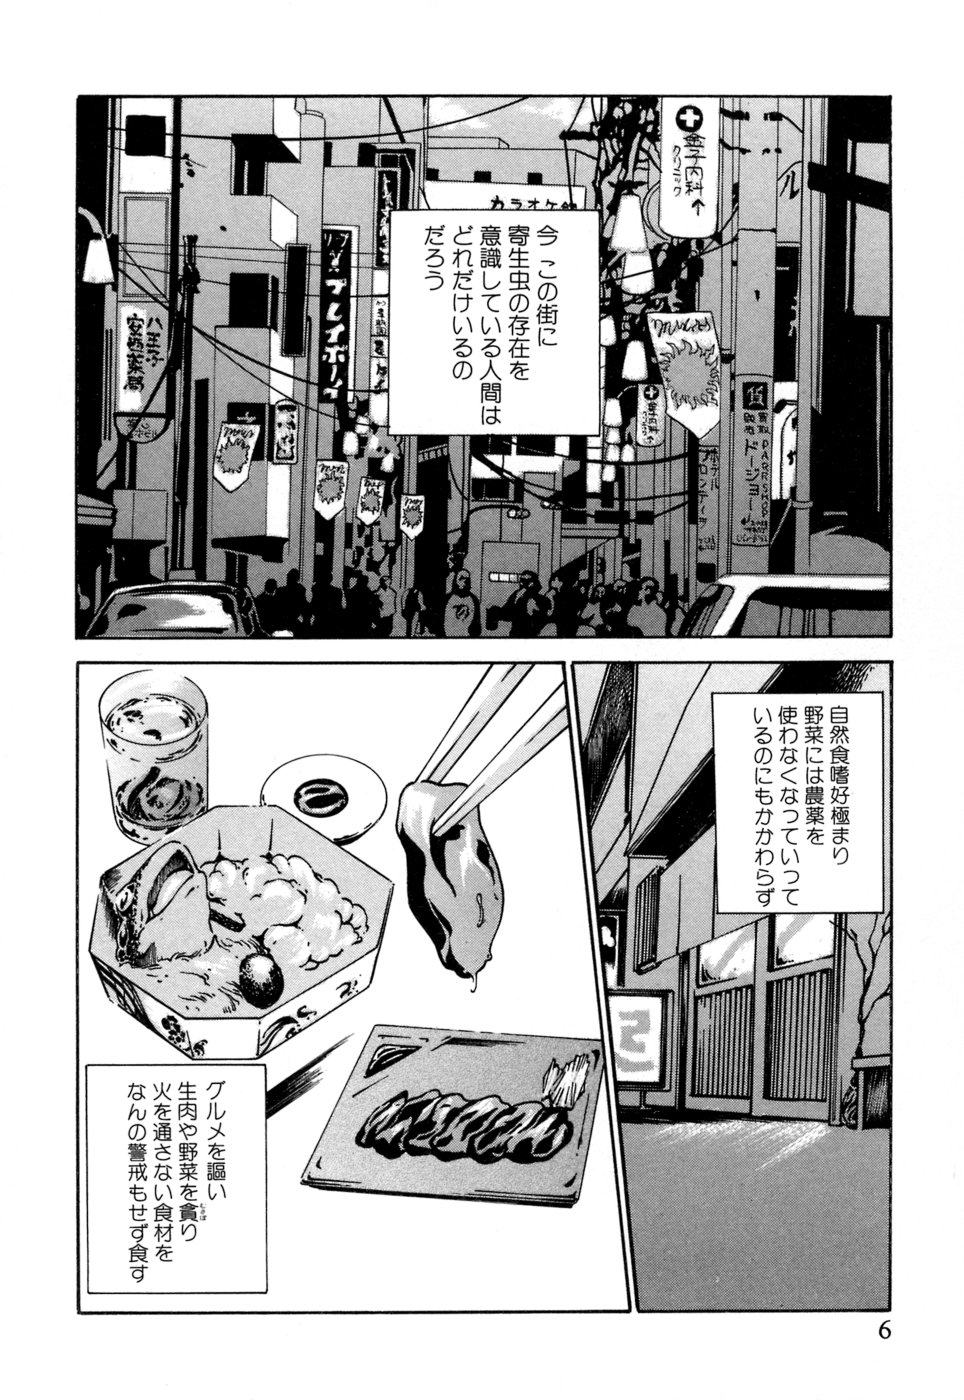 [Haruki] Kisei Juui Suzune 1 page 6 full